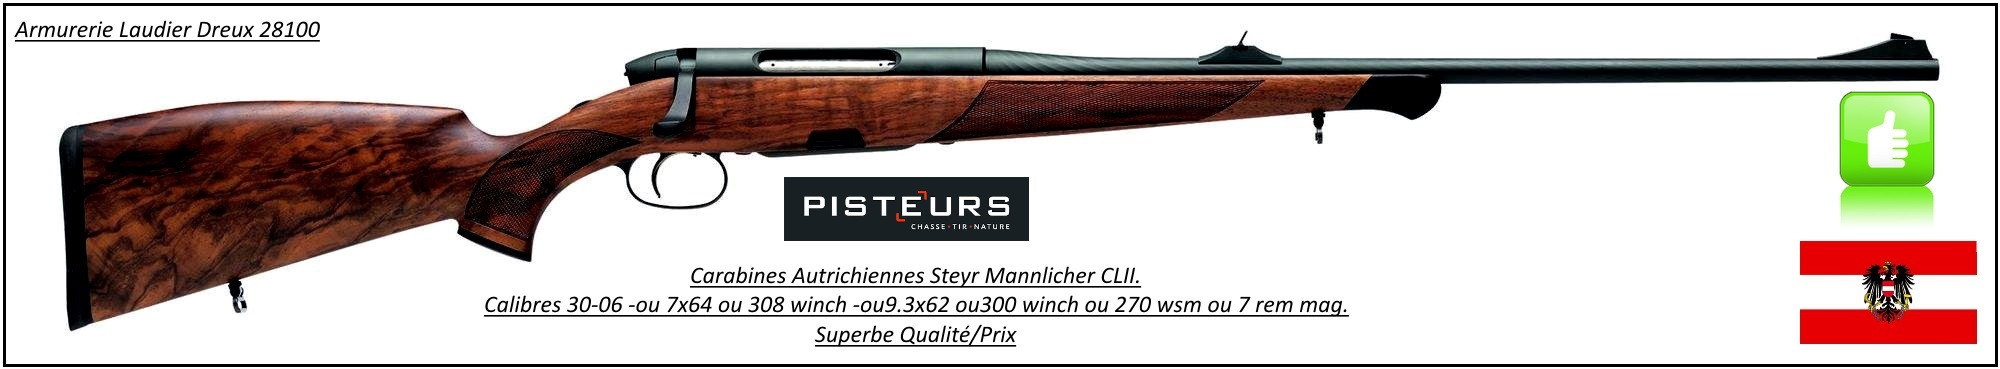 Carabine-STEYR MANNLICHER-CLII-Classic-Light-Autrichienne-Calibre 9,3x62-Répétition-Ref 7242-SMC19362